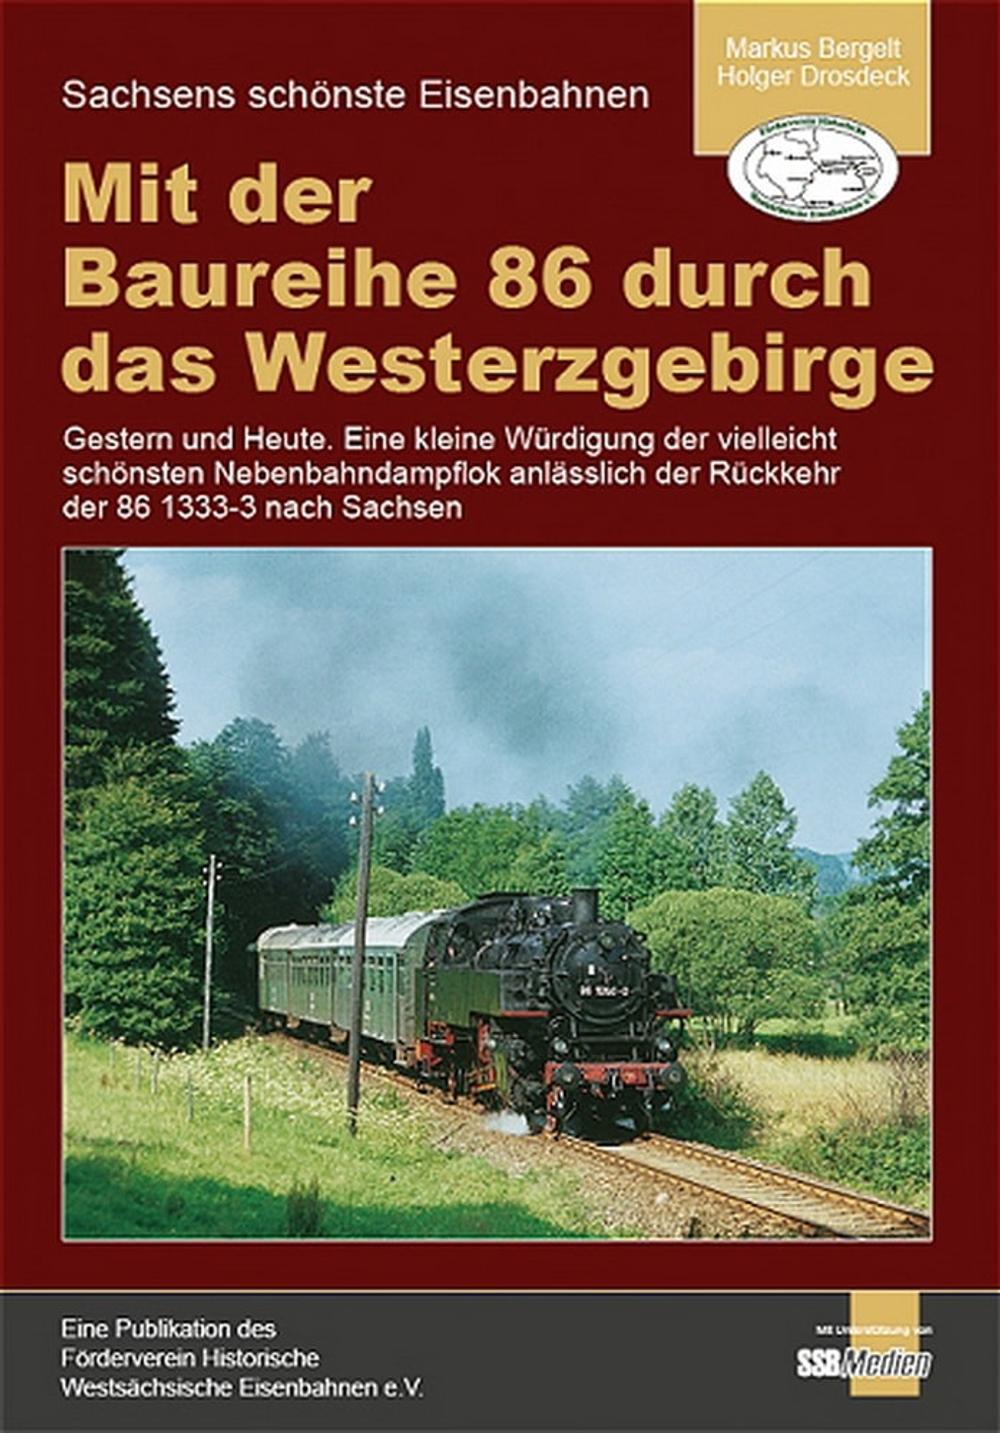 Coverbild "Mit der Baureihe 86 durch das Westerzgebirge"